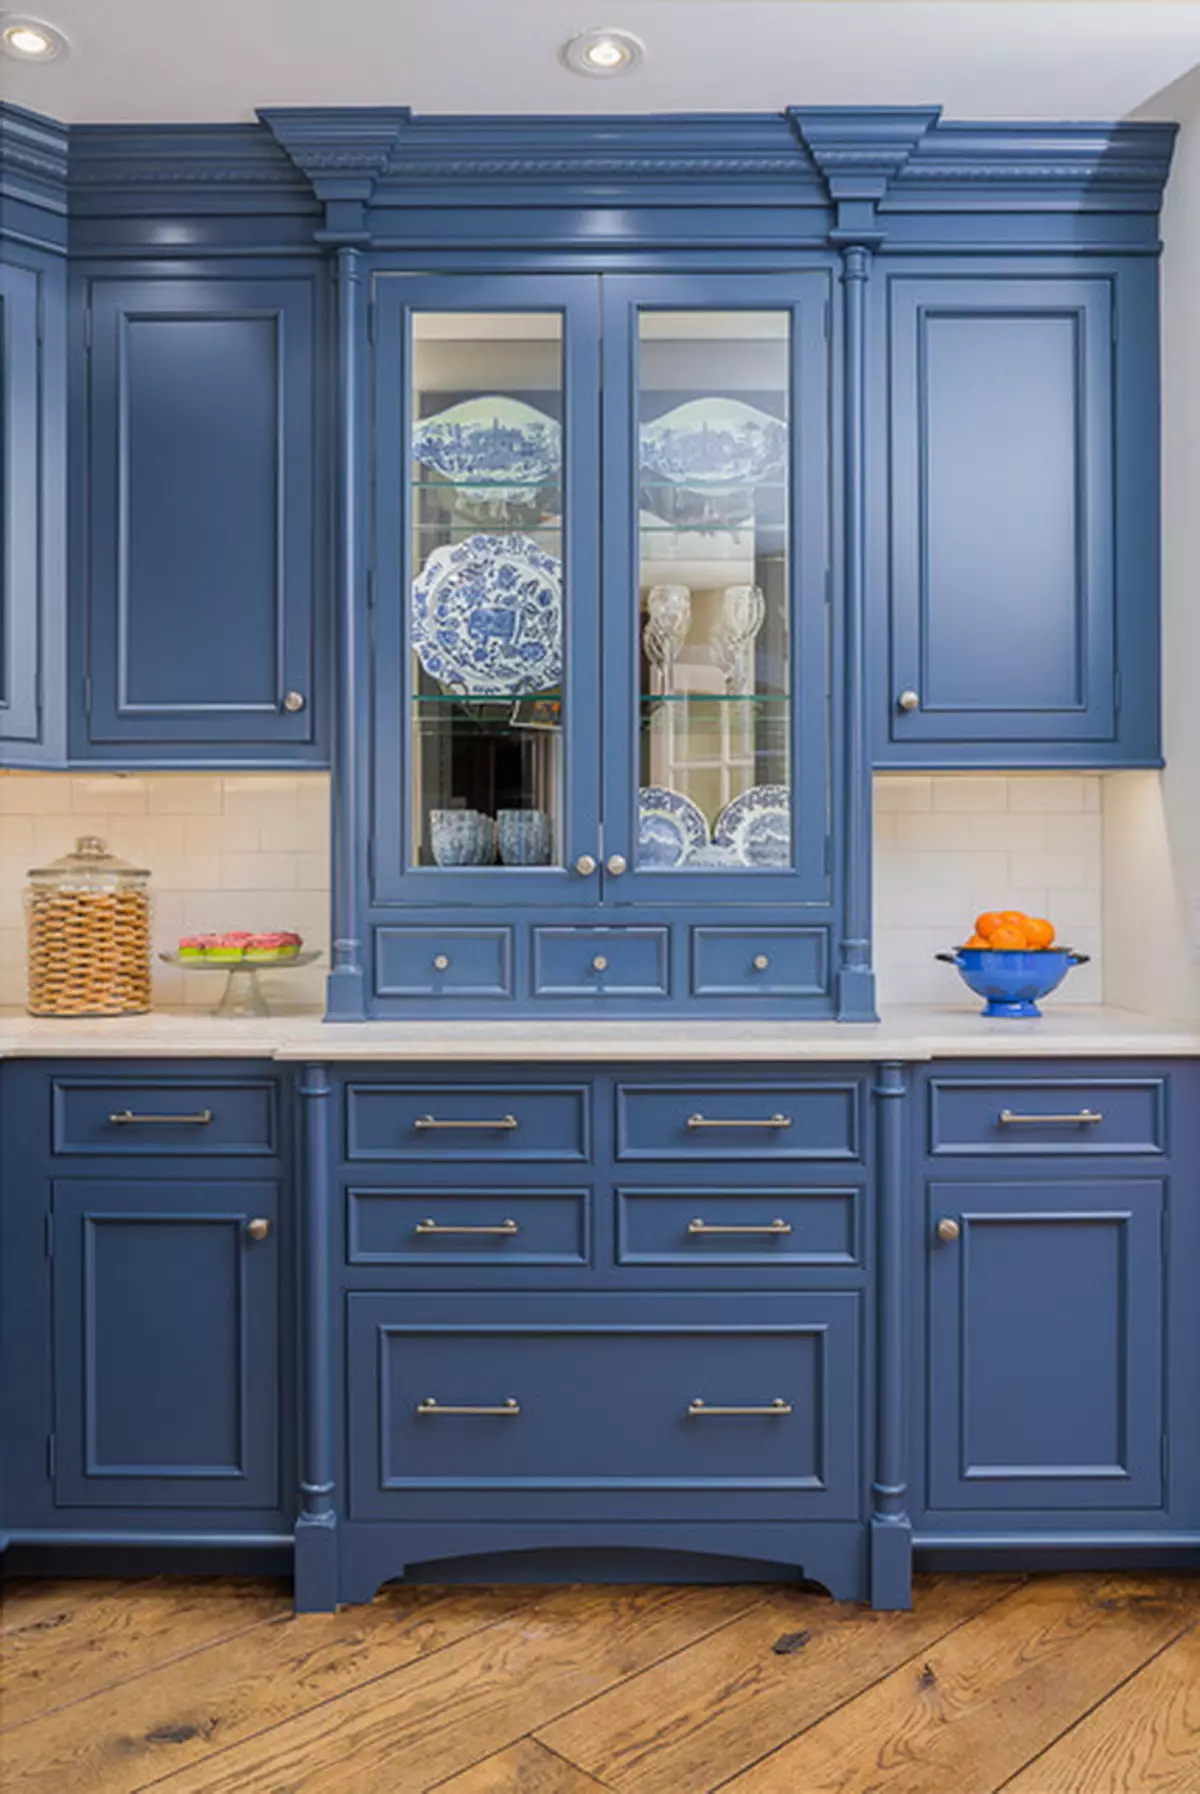 藍廚房（82張照片）：在藍色廚房套裝內部合併哪種顏色？淺藍色和深藍色色調的廚房設計 9555_57